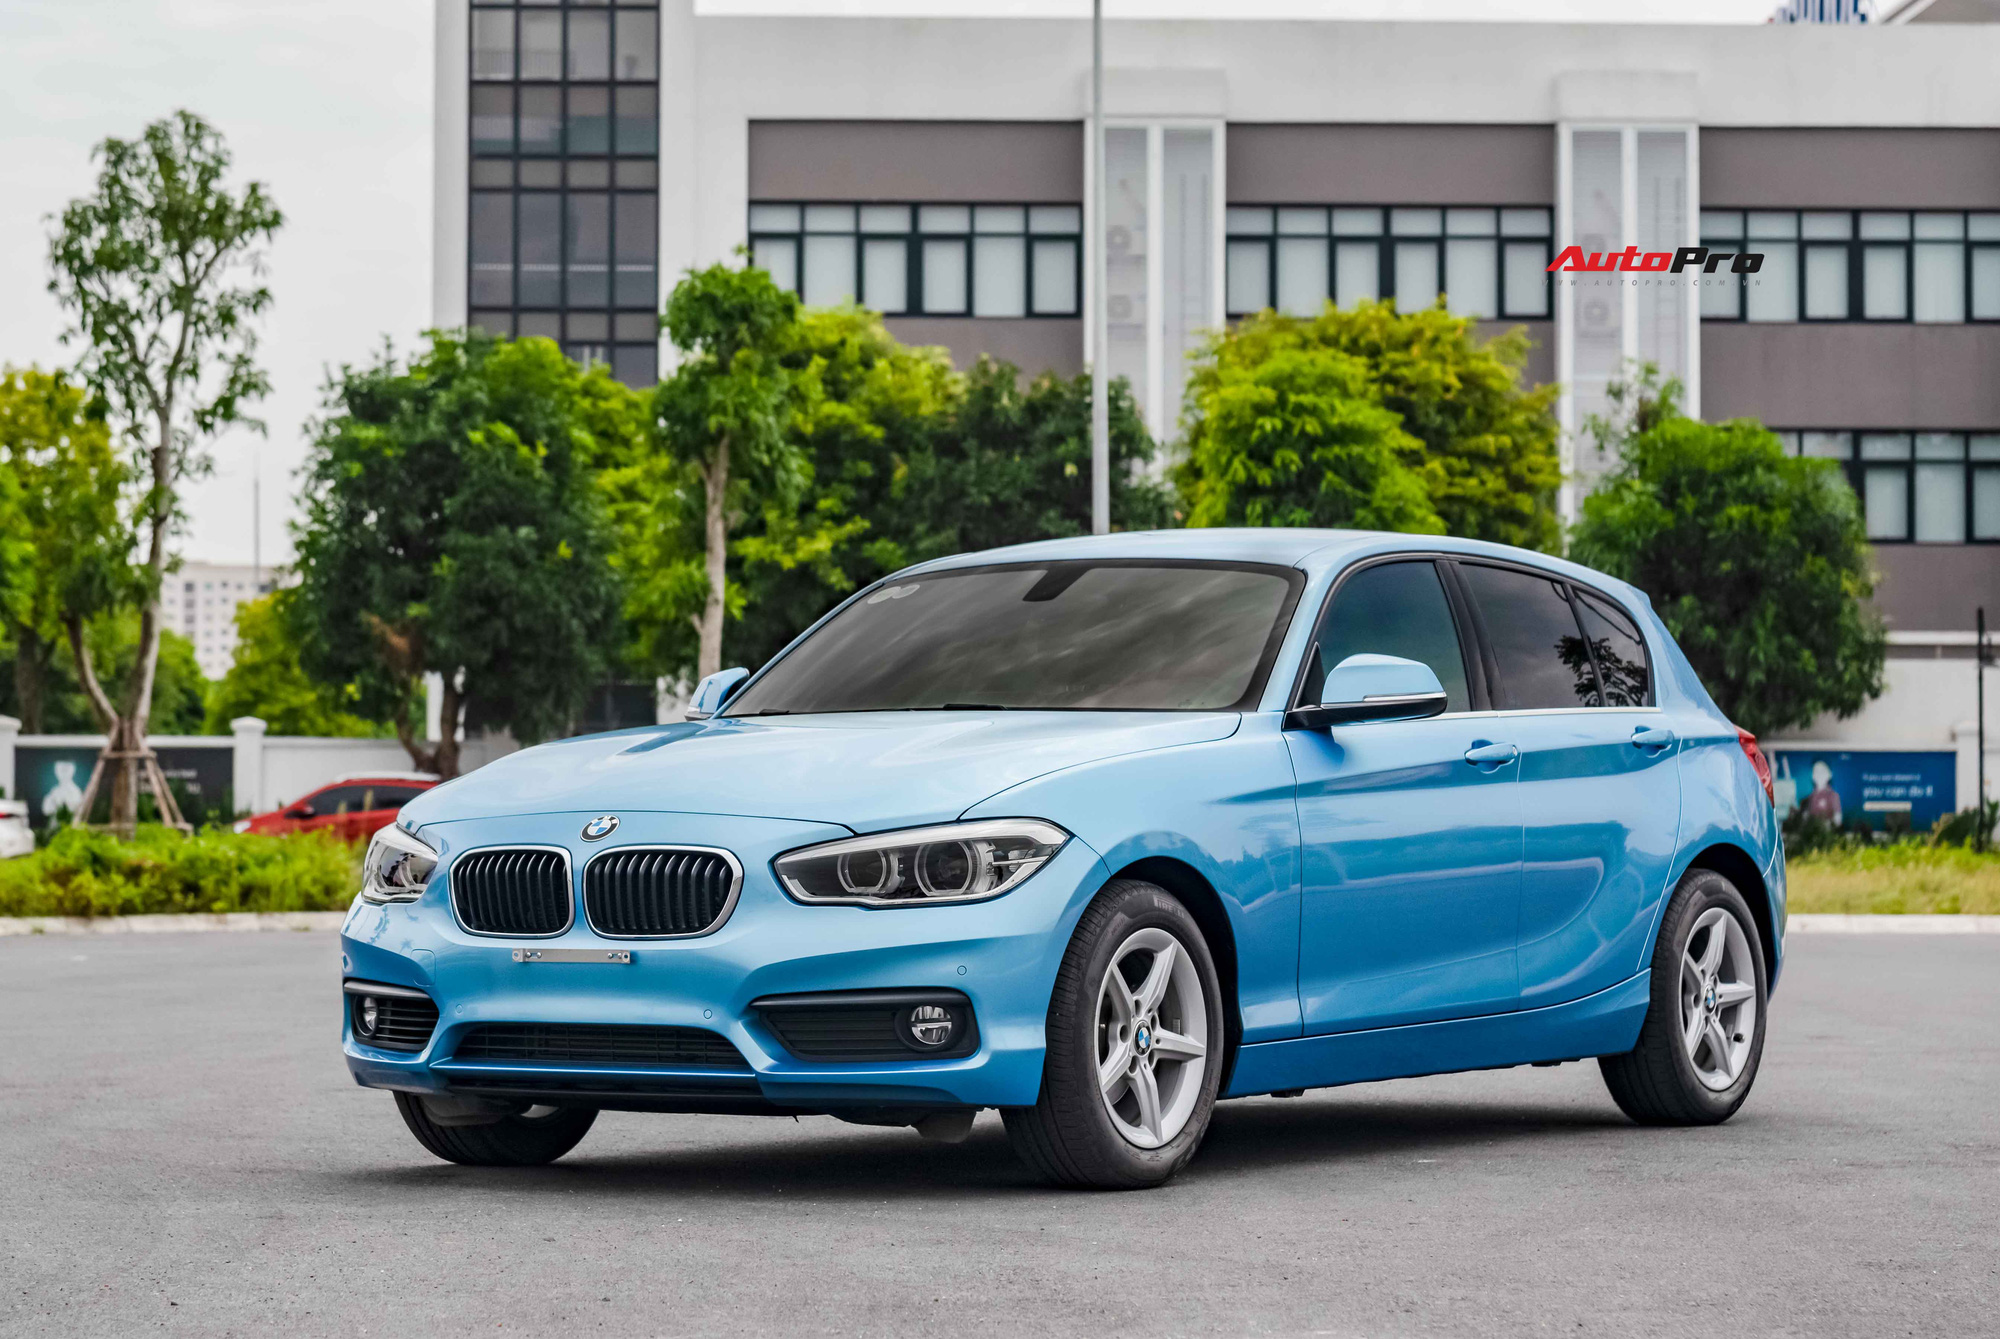 Đây là mẫu xe BMW dành cho gia đình, giá rẻ hơn Toyota Camry mới gần 200 triệu đồng - Ảnh 7.